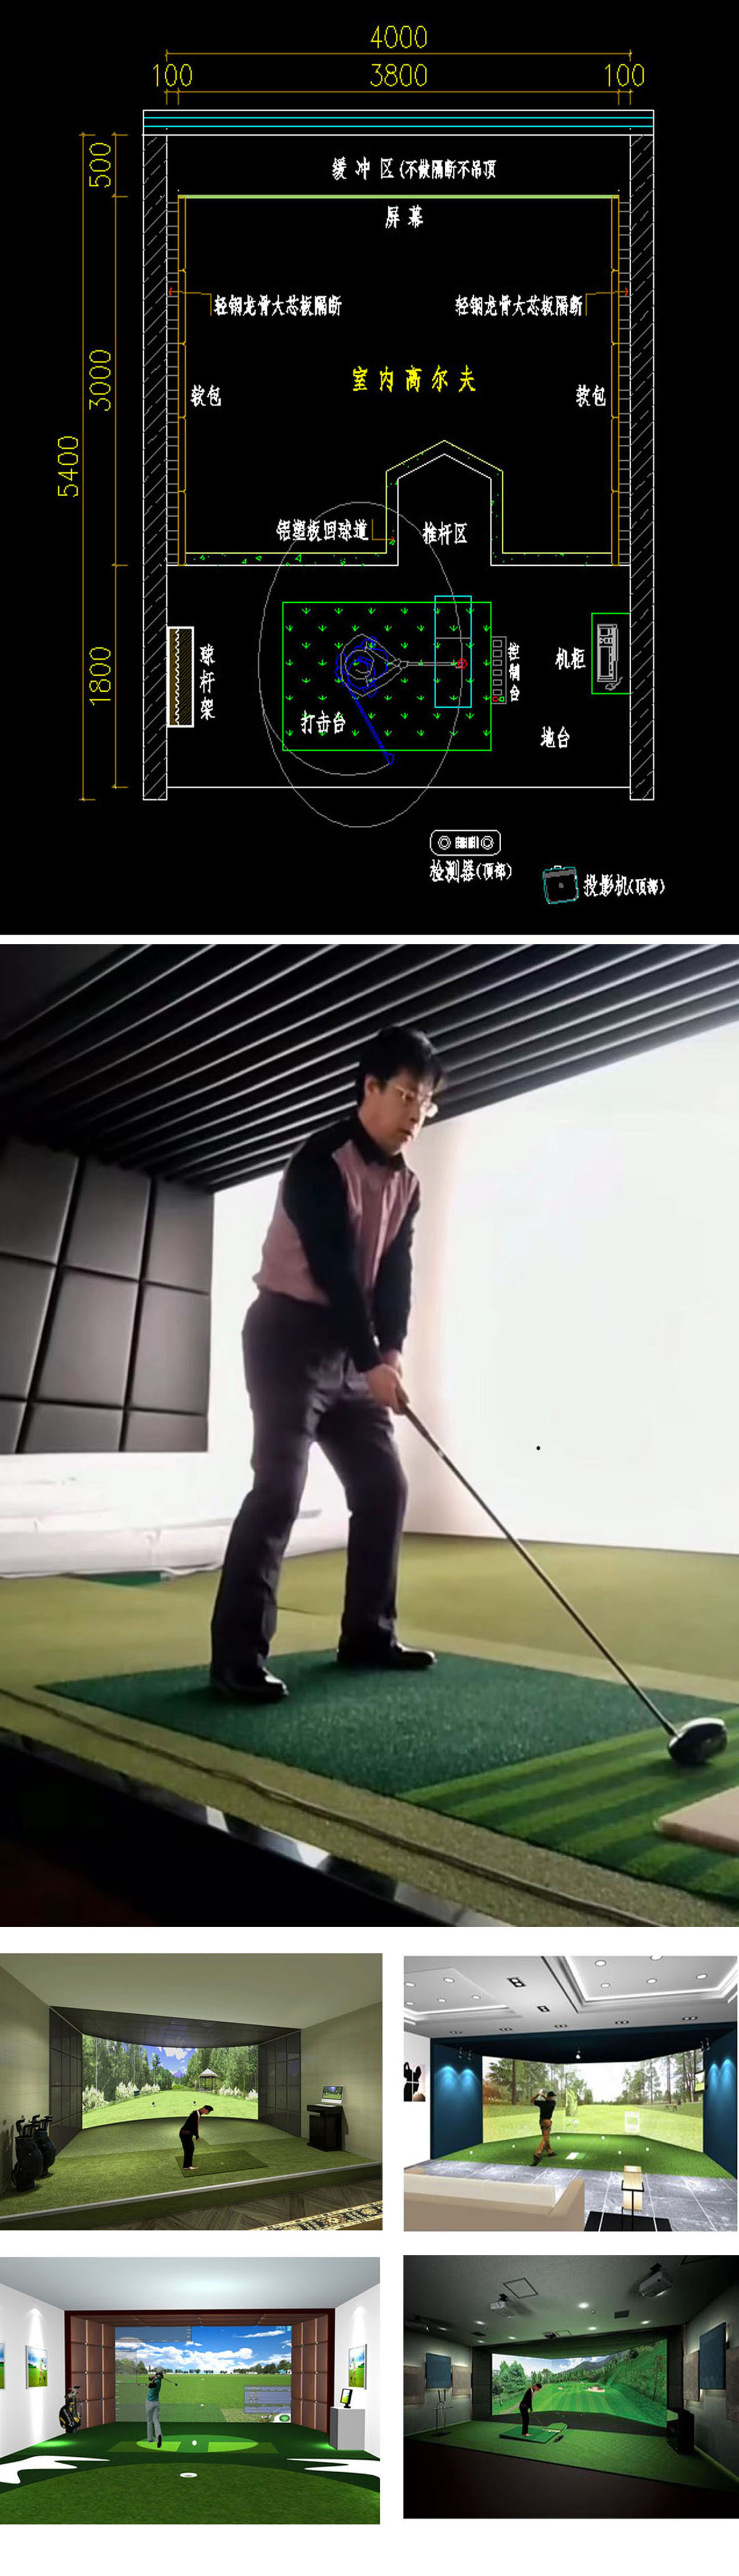 韩国室内高尔夫球场 1.jpg